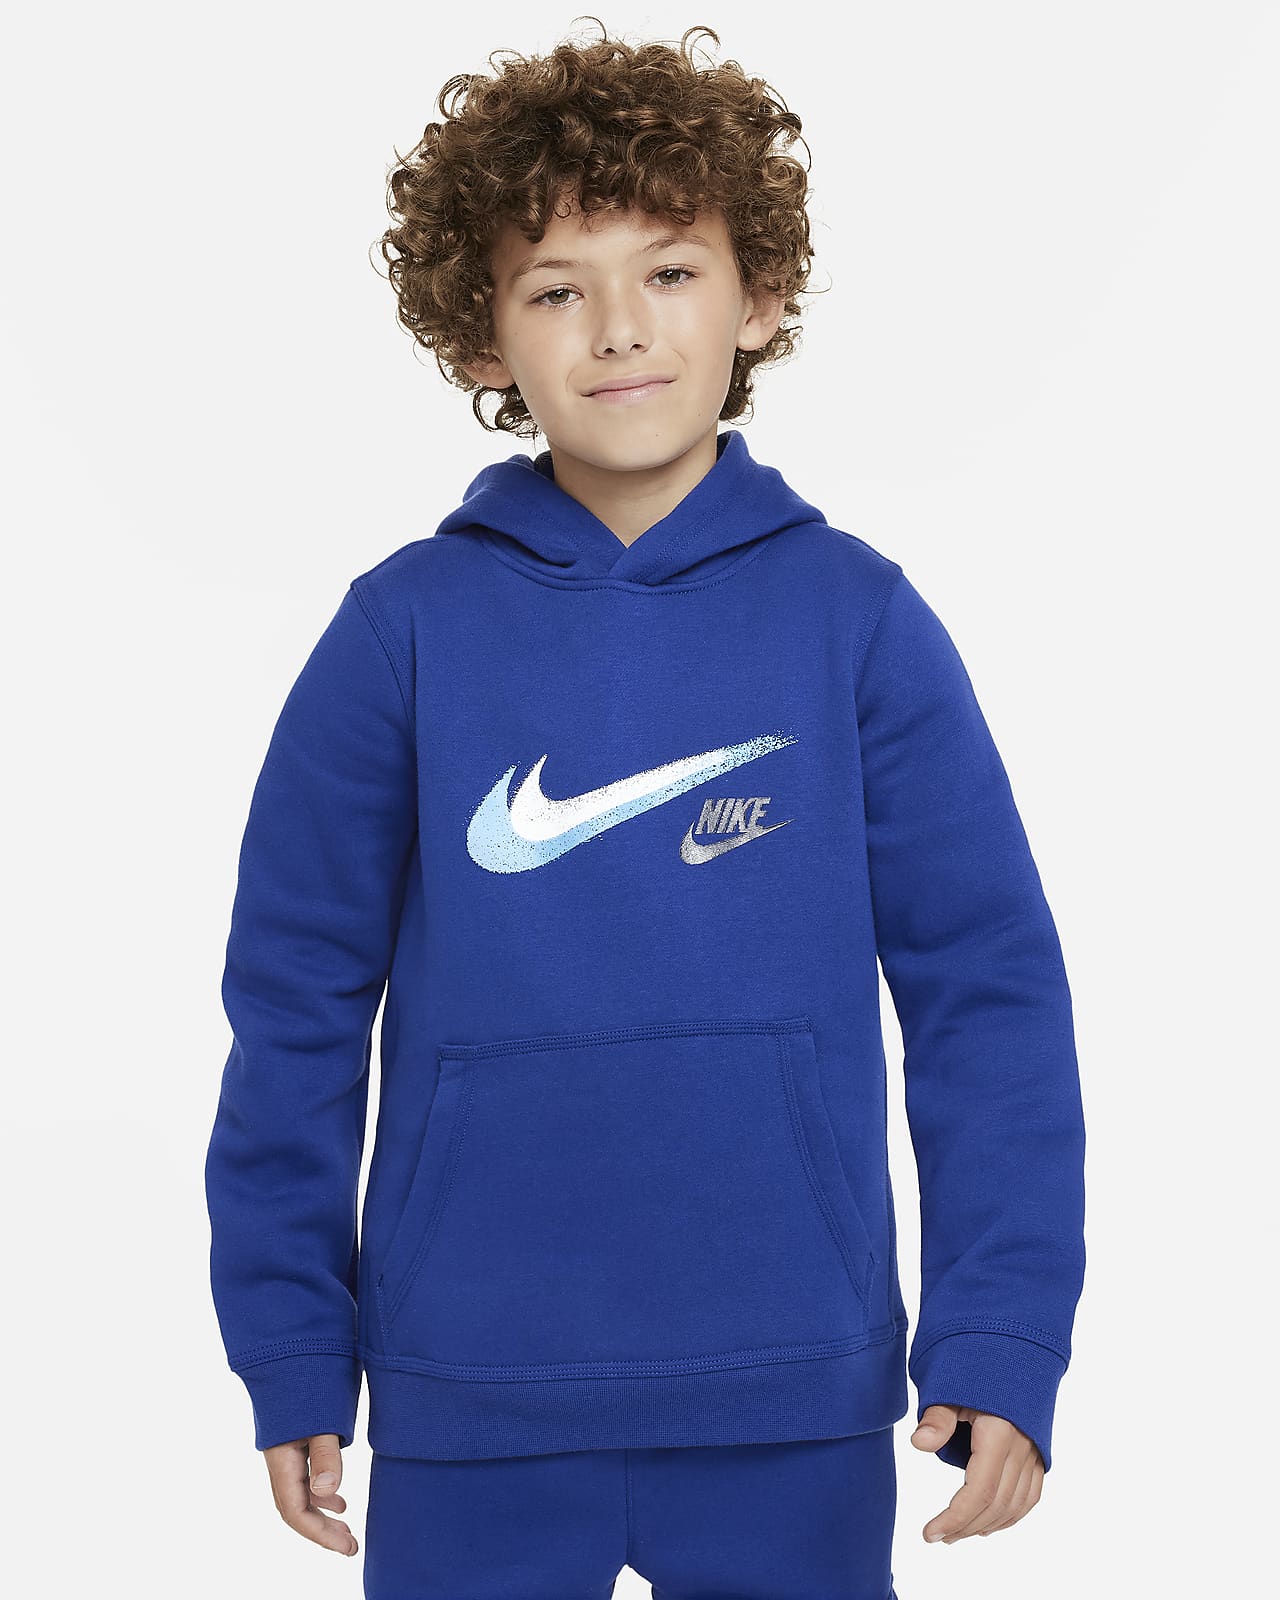 Nike Sportswear-pullover-hættetrøje i fleece med grafik til større børn (drenge)